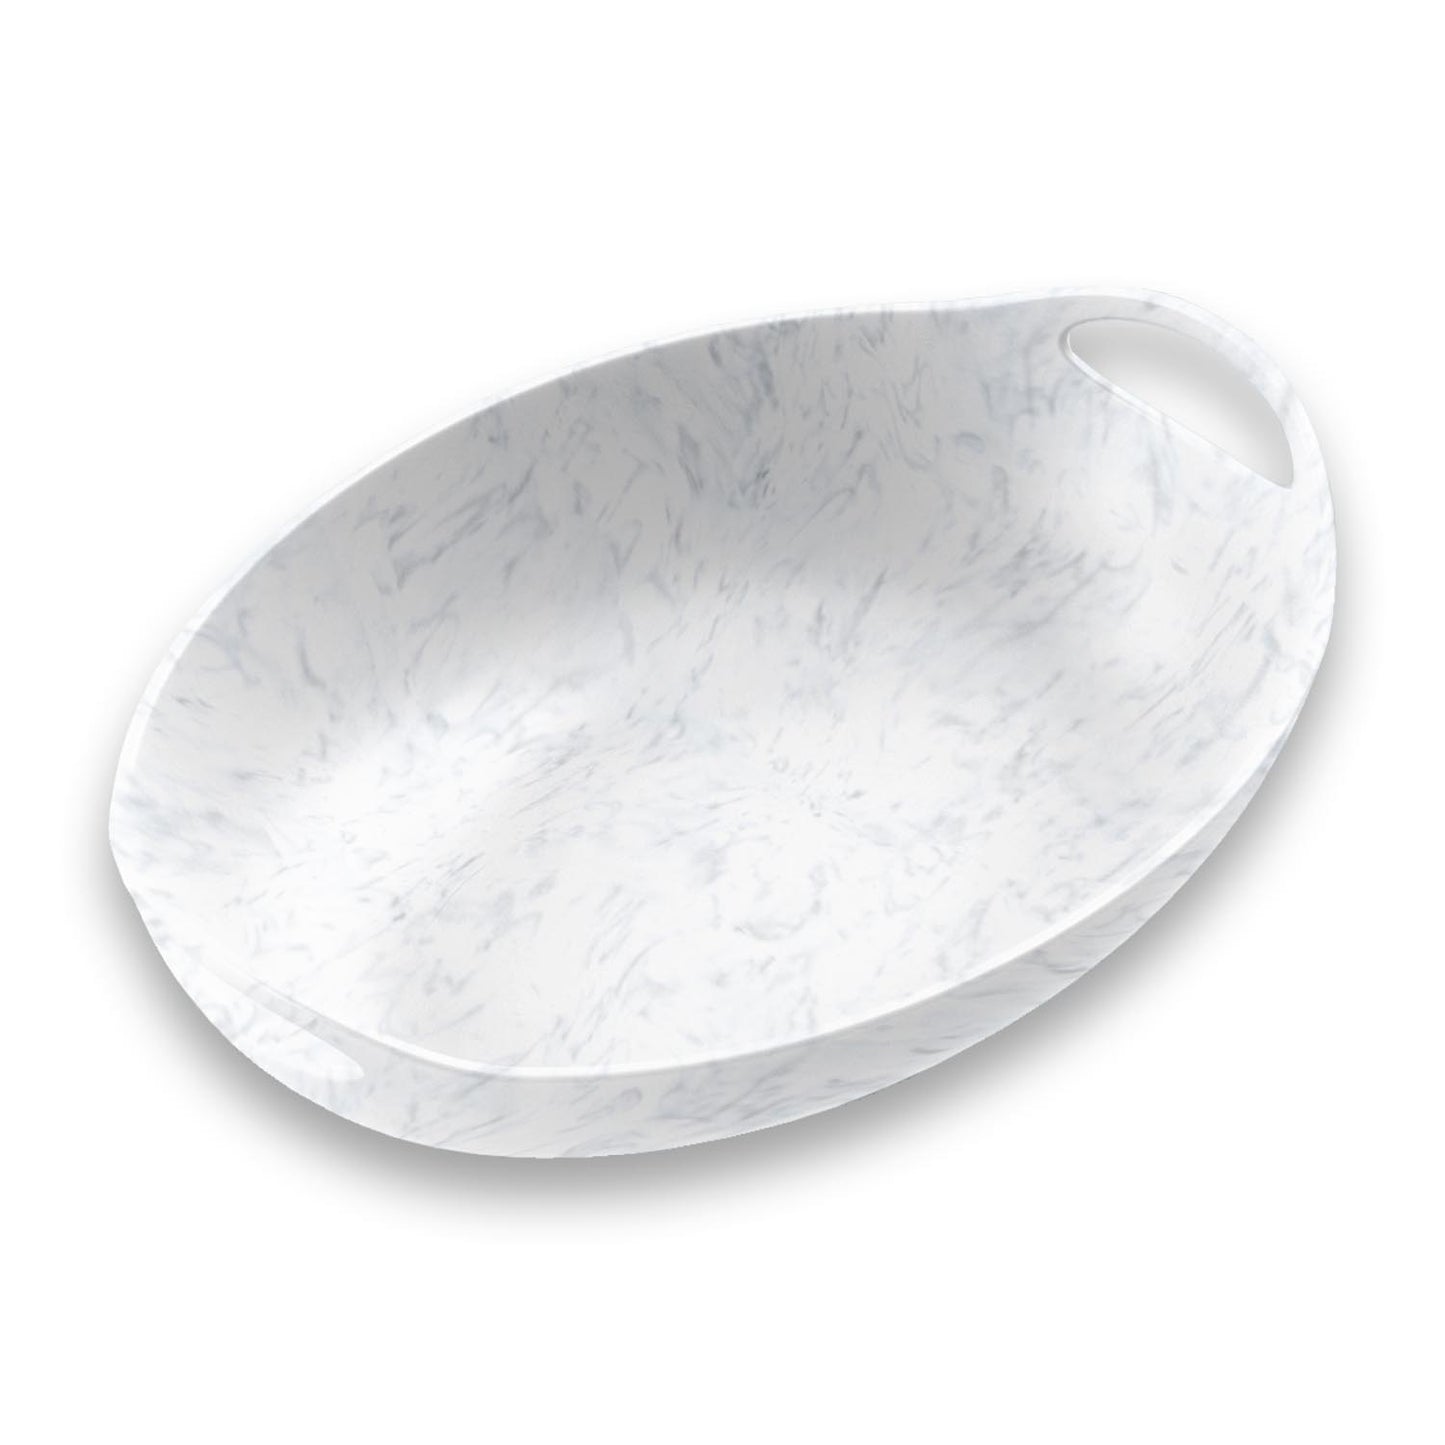 Seaglass Handled Bowl